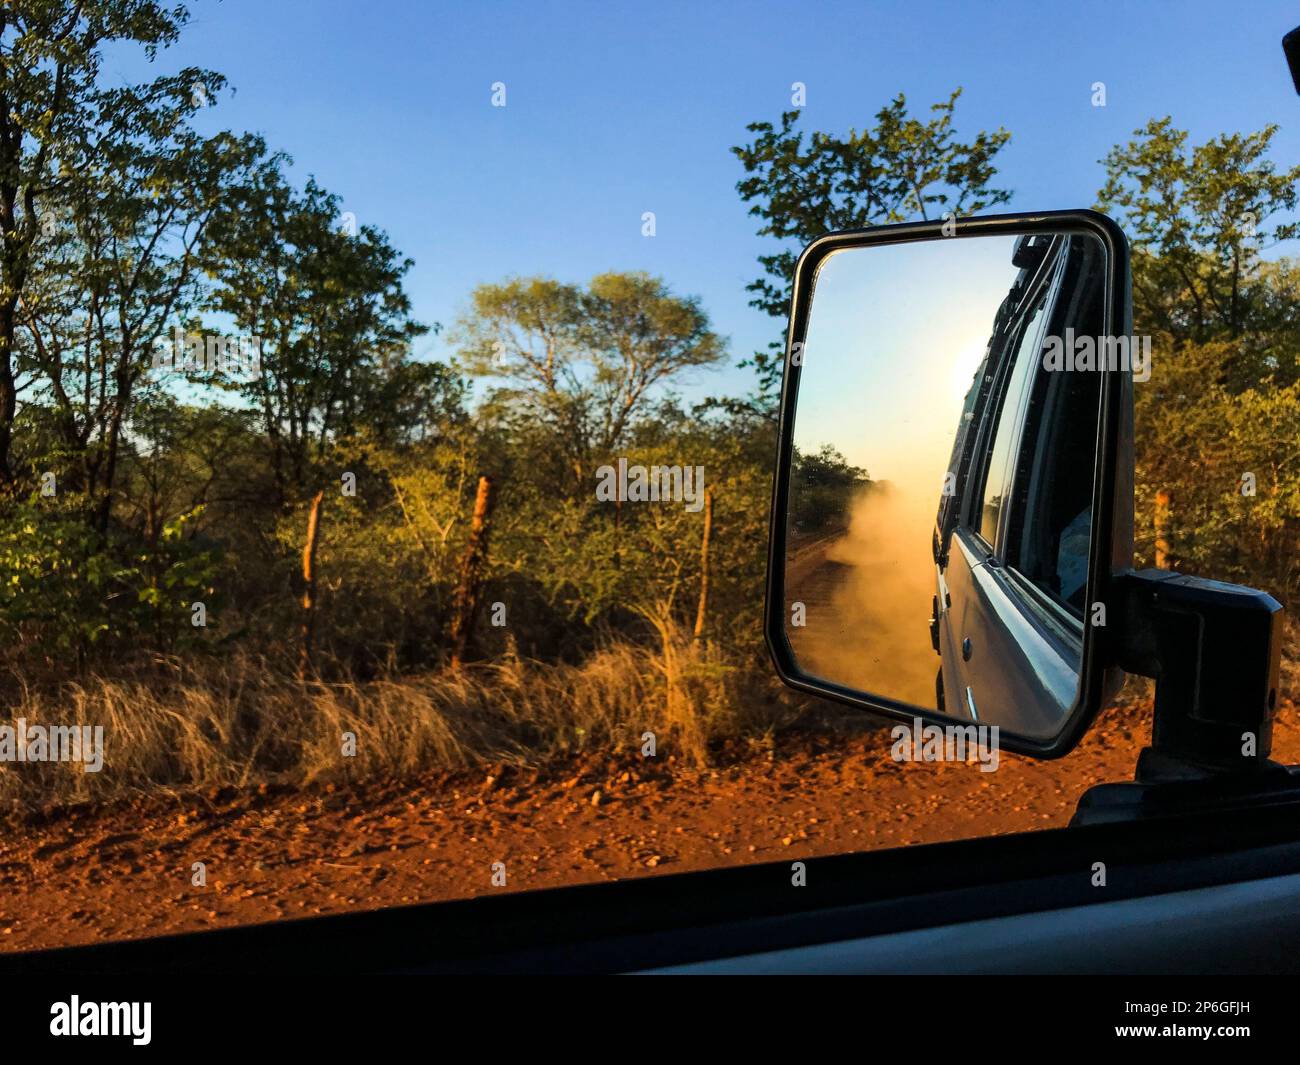 Die Reflexion im Rückspiegel des Fahrzeugs zeigt Staub, der in die Luft hinter dem Fahrzeug zirkuliert. Francistown, Botswana, Afrika Stockfoto